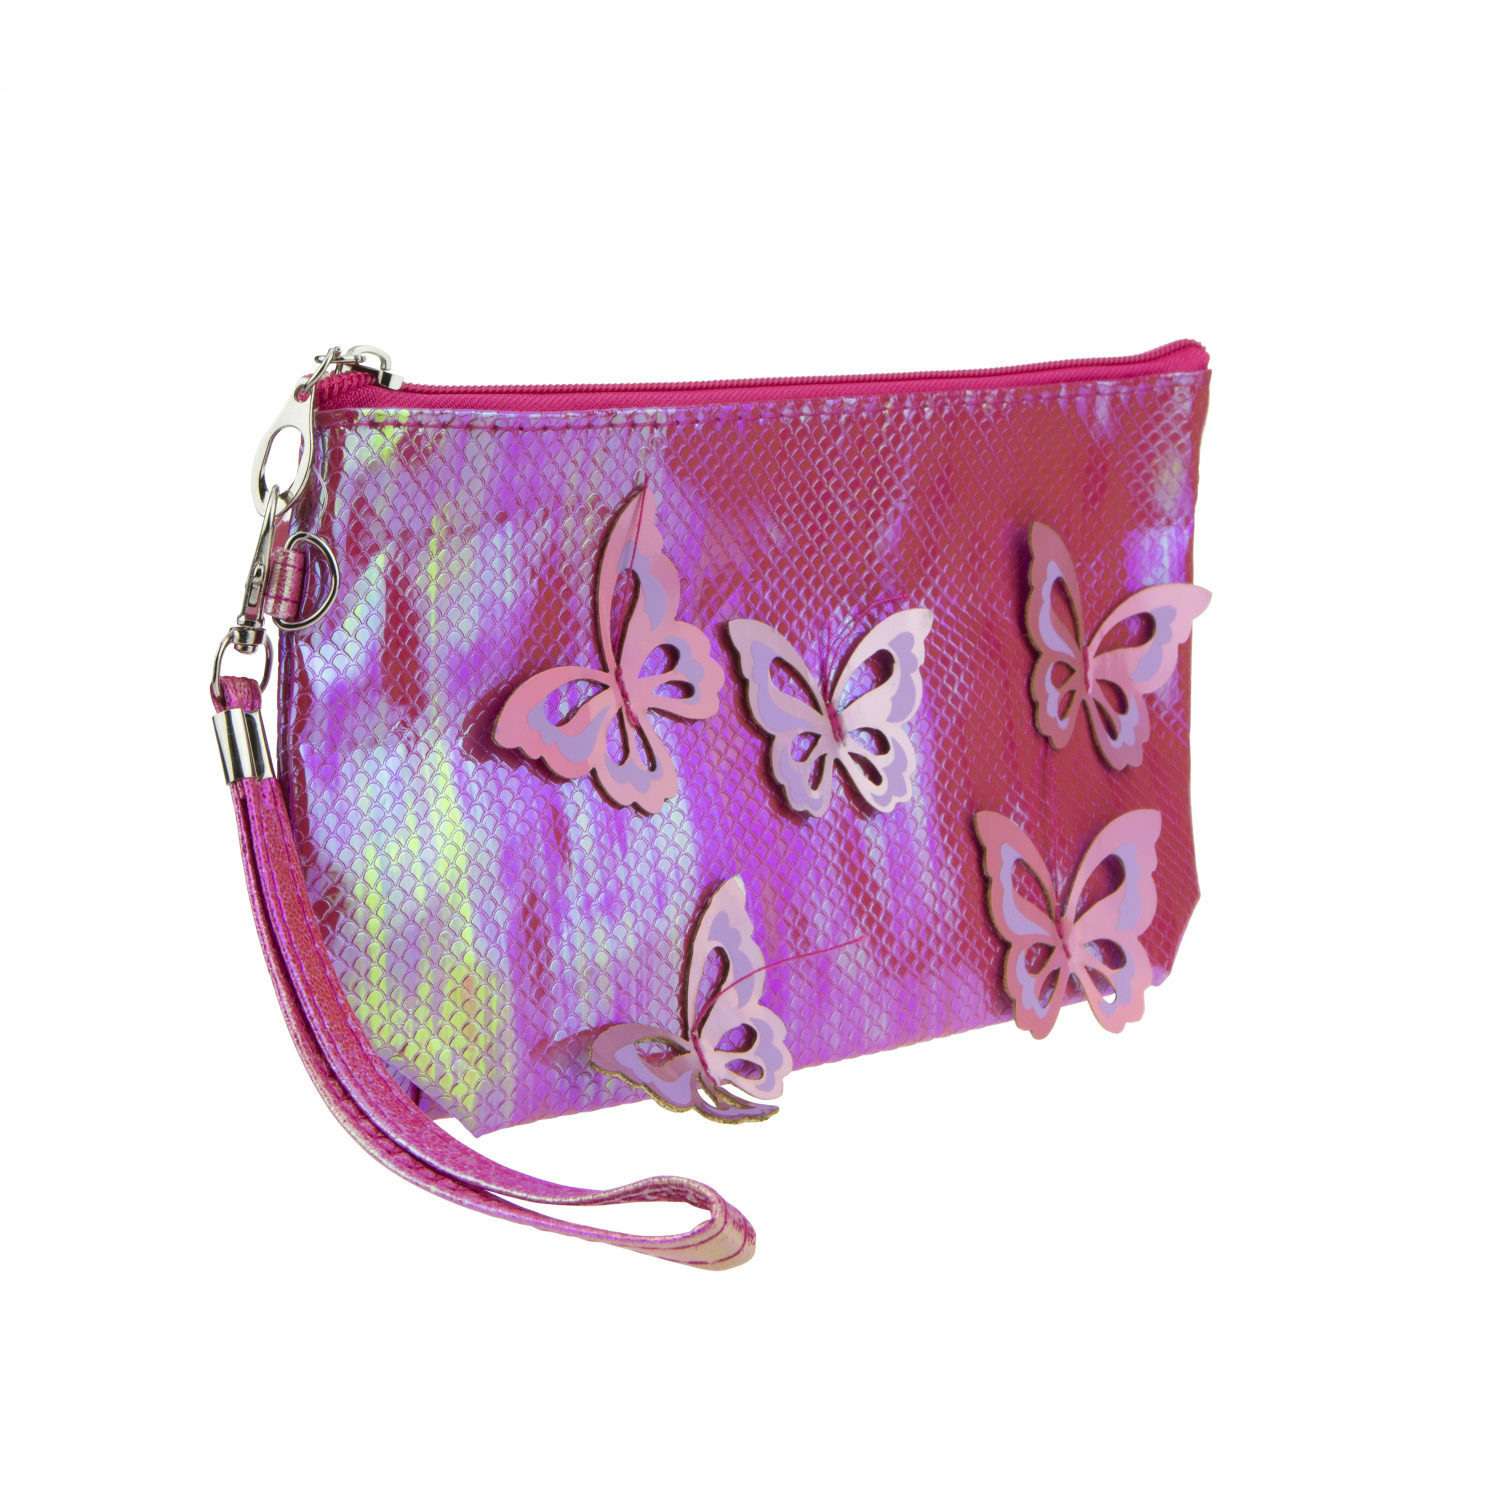 Пенал- косметичка Lukky с голографическими накладными бабочками розовая 24х13 см - фото 1